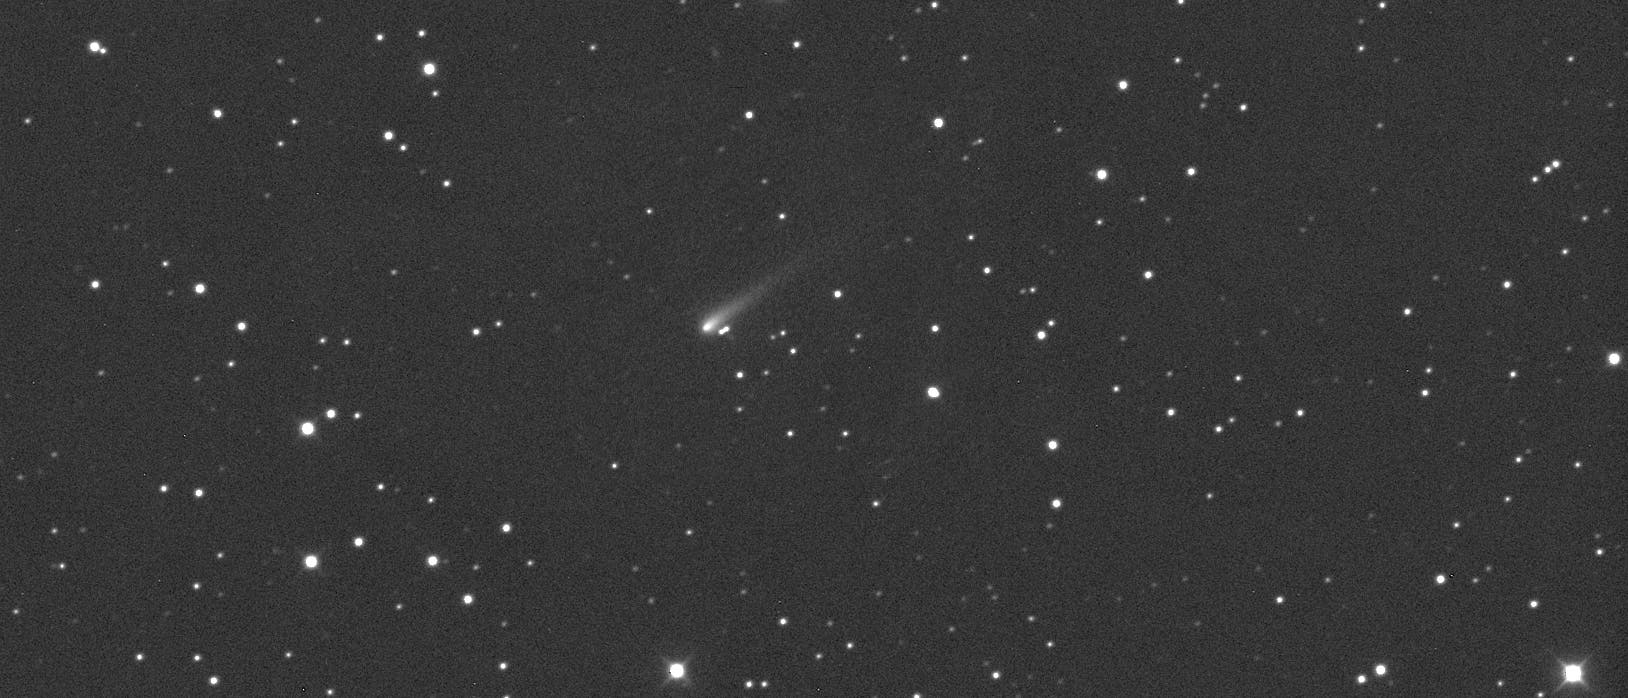 Komet ISON am 8. September 2013